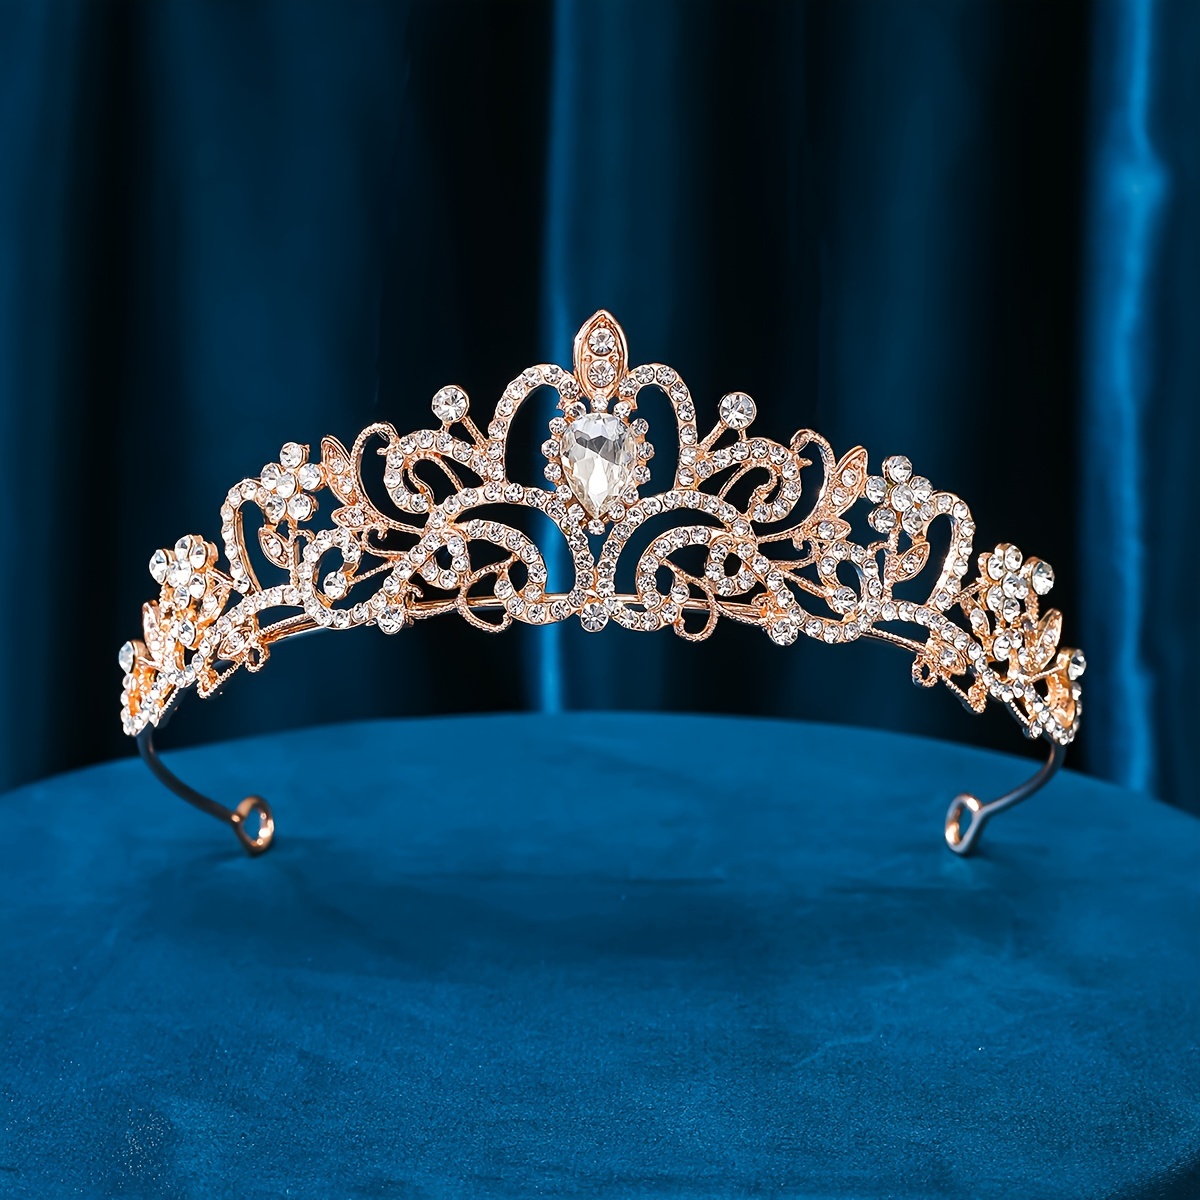 Accessoires Princesse 100+ Produits Luxe Pour Tous - Couronne Royale